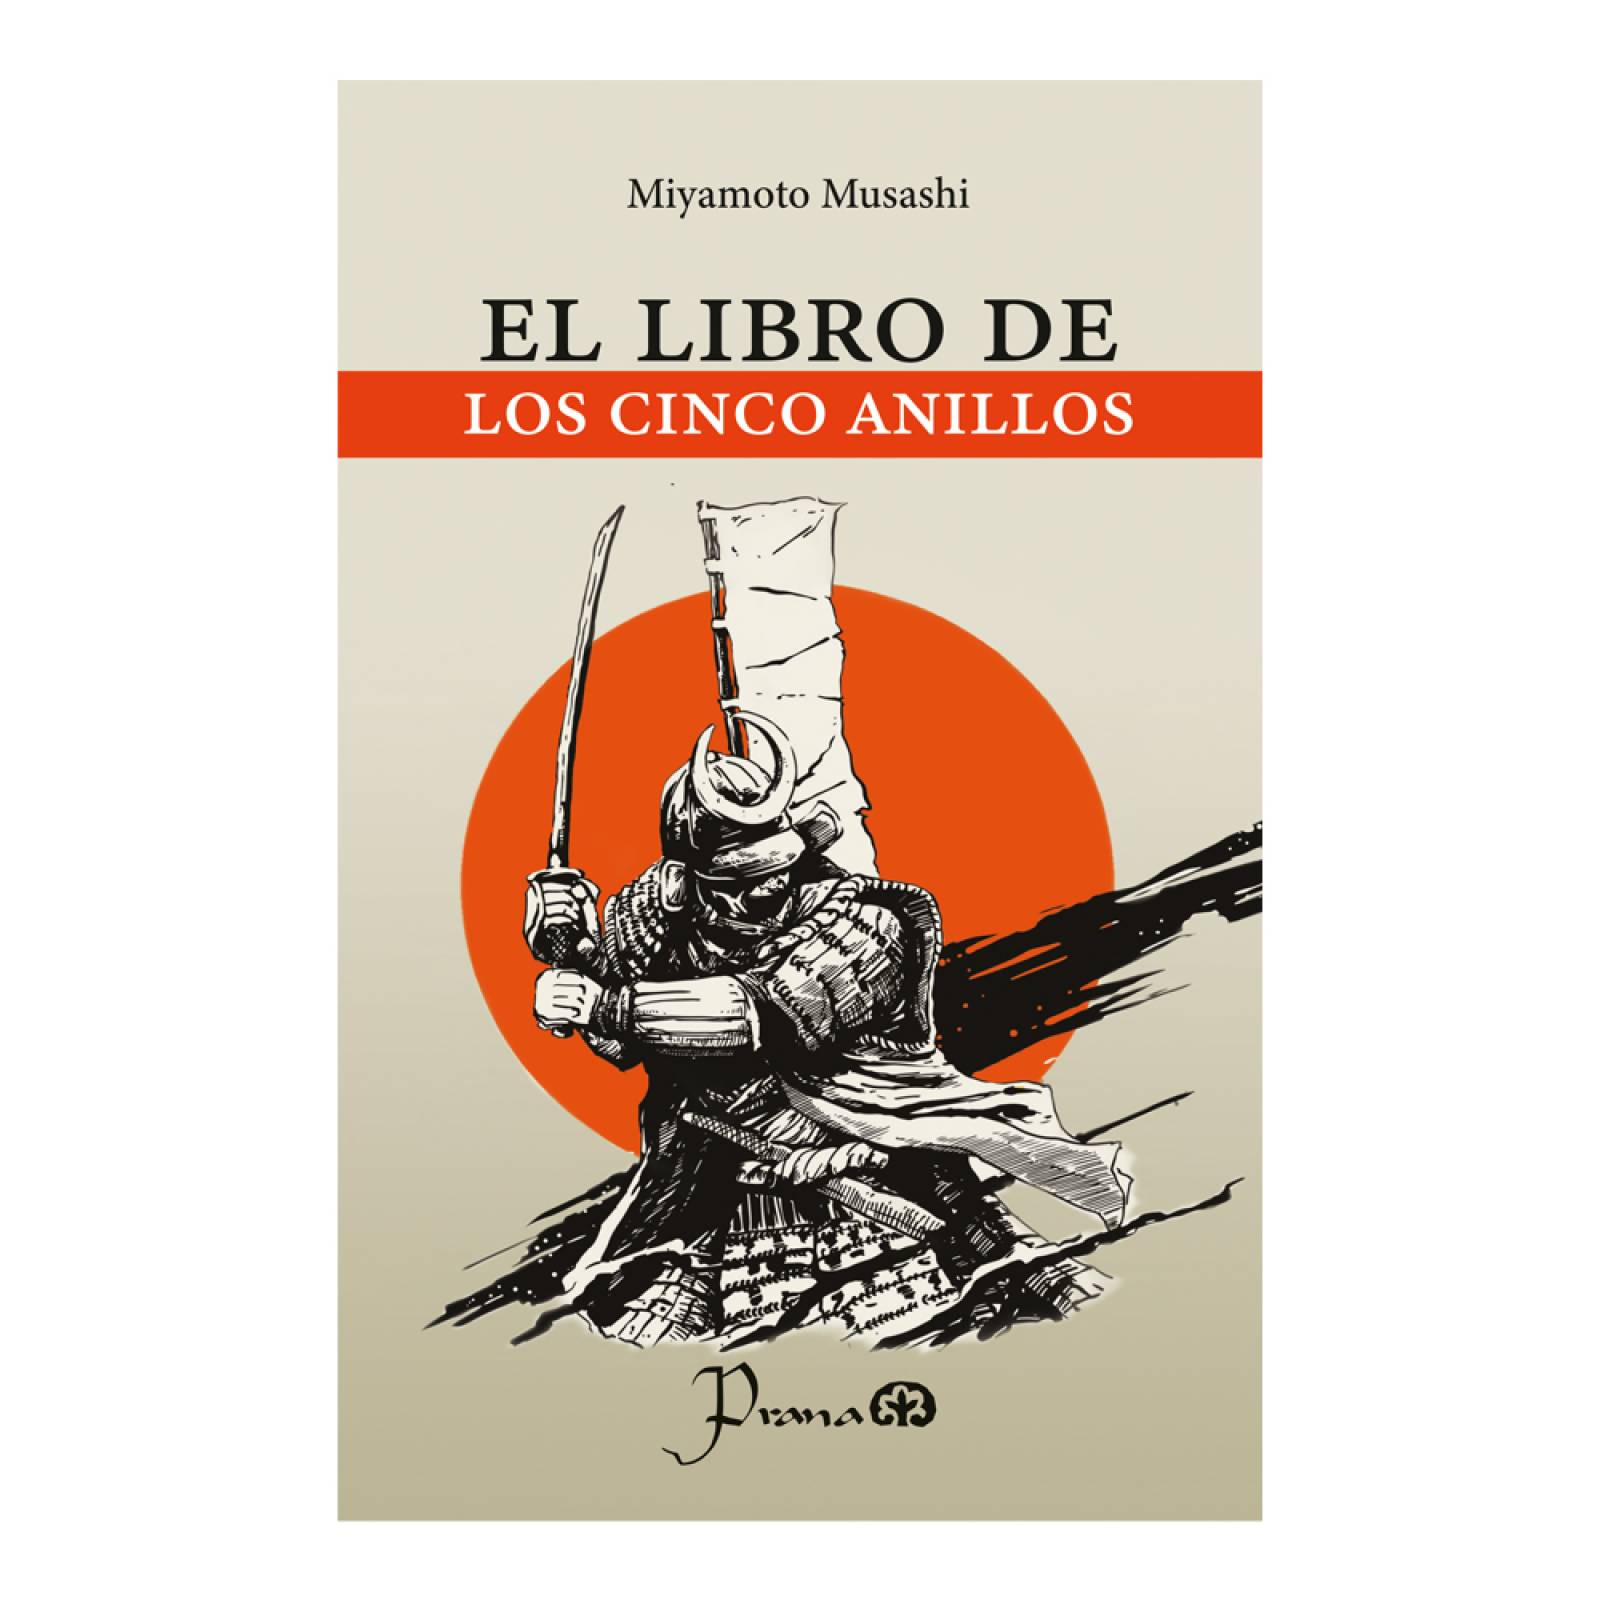 El libro de los cinco anillos: La estrategia del guerrero - Audiobook -  Miyamoto Musashi - Storytel